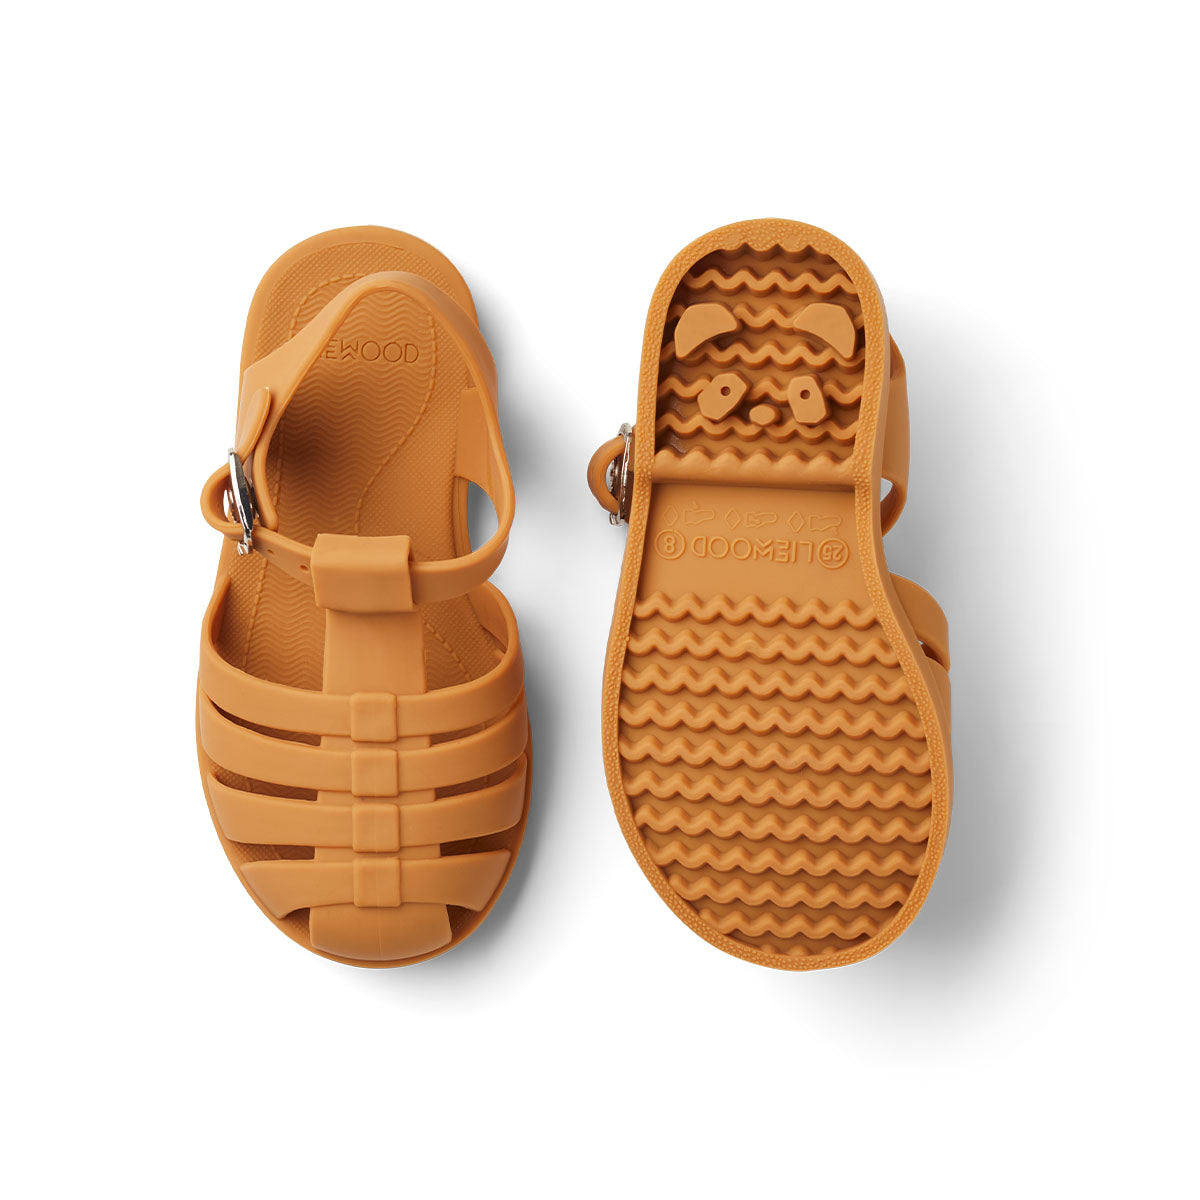 Ben je op zoek naar praktische én hippe waterschoenen? Dan zijn deze bre sandalen van Liewood in de kleur mustard een goede keus! Dankzij het flexibele materiaal en de verstelbare bandjes zijn deze okergele waterschoentjes perfect voor op het strand of aan het water en heel comfortabel voor je kind. VanZus